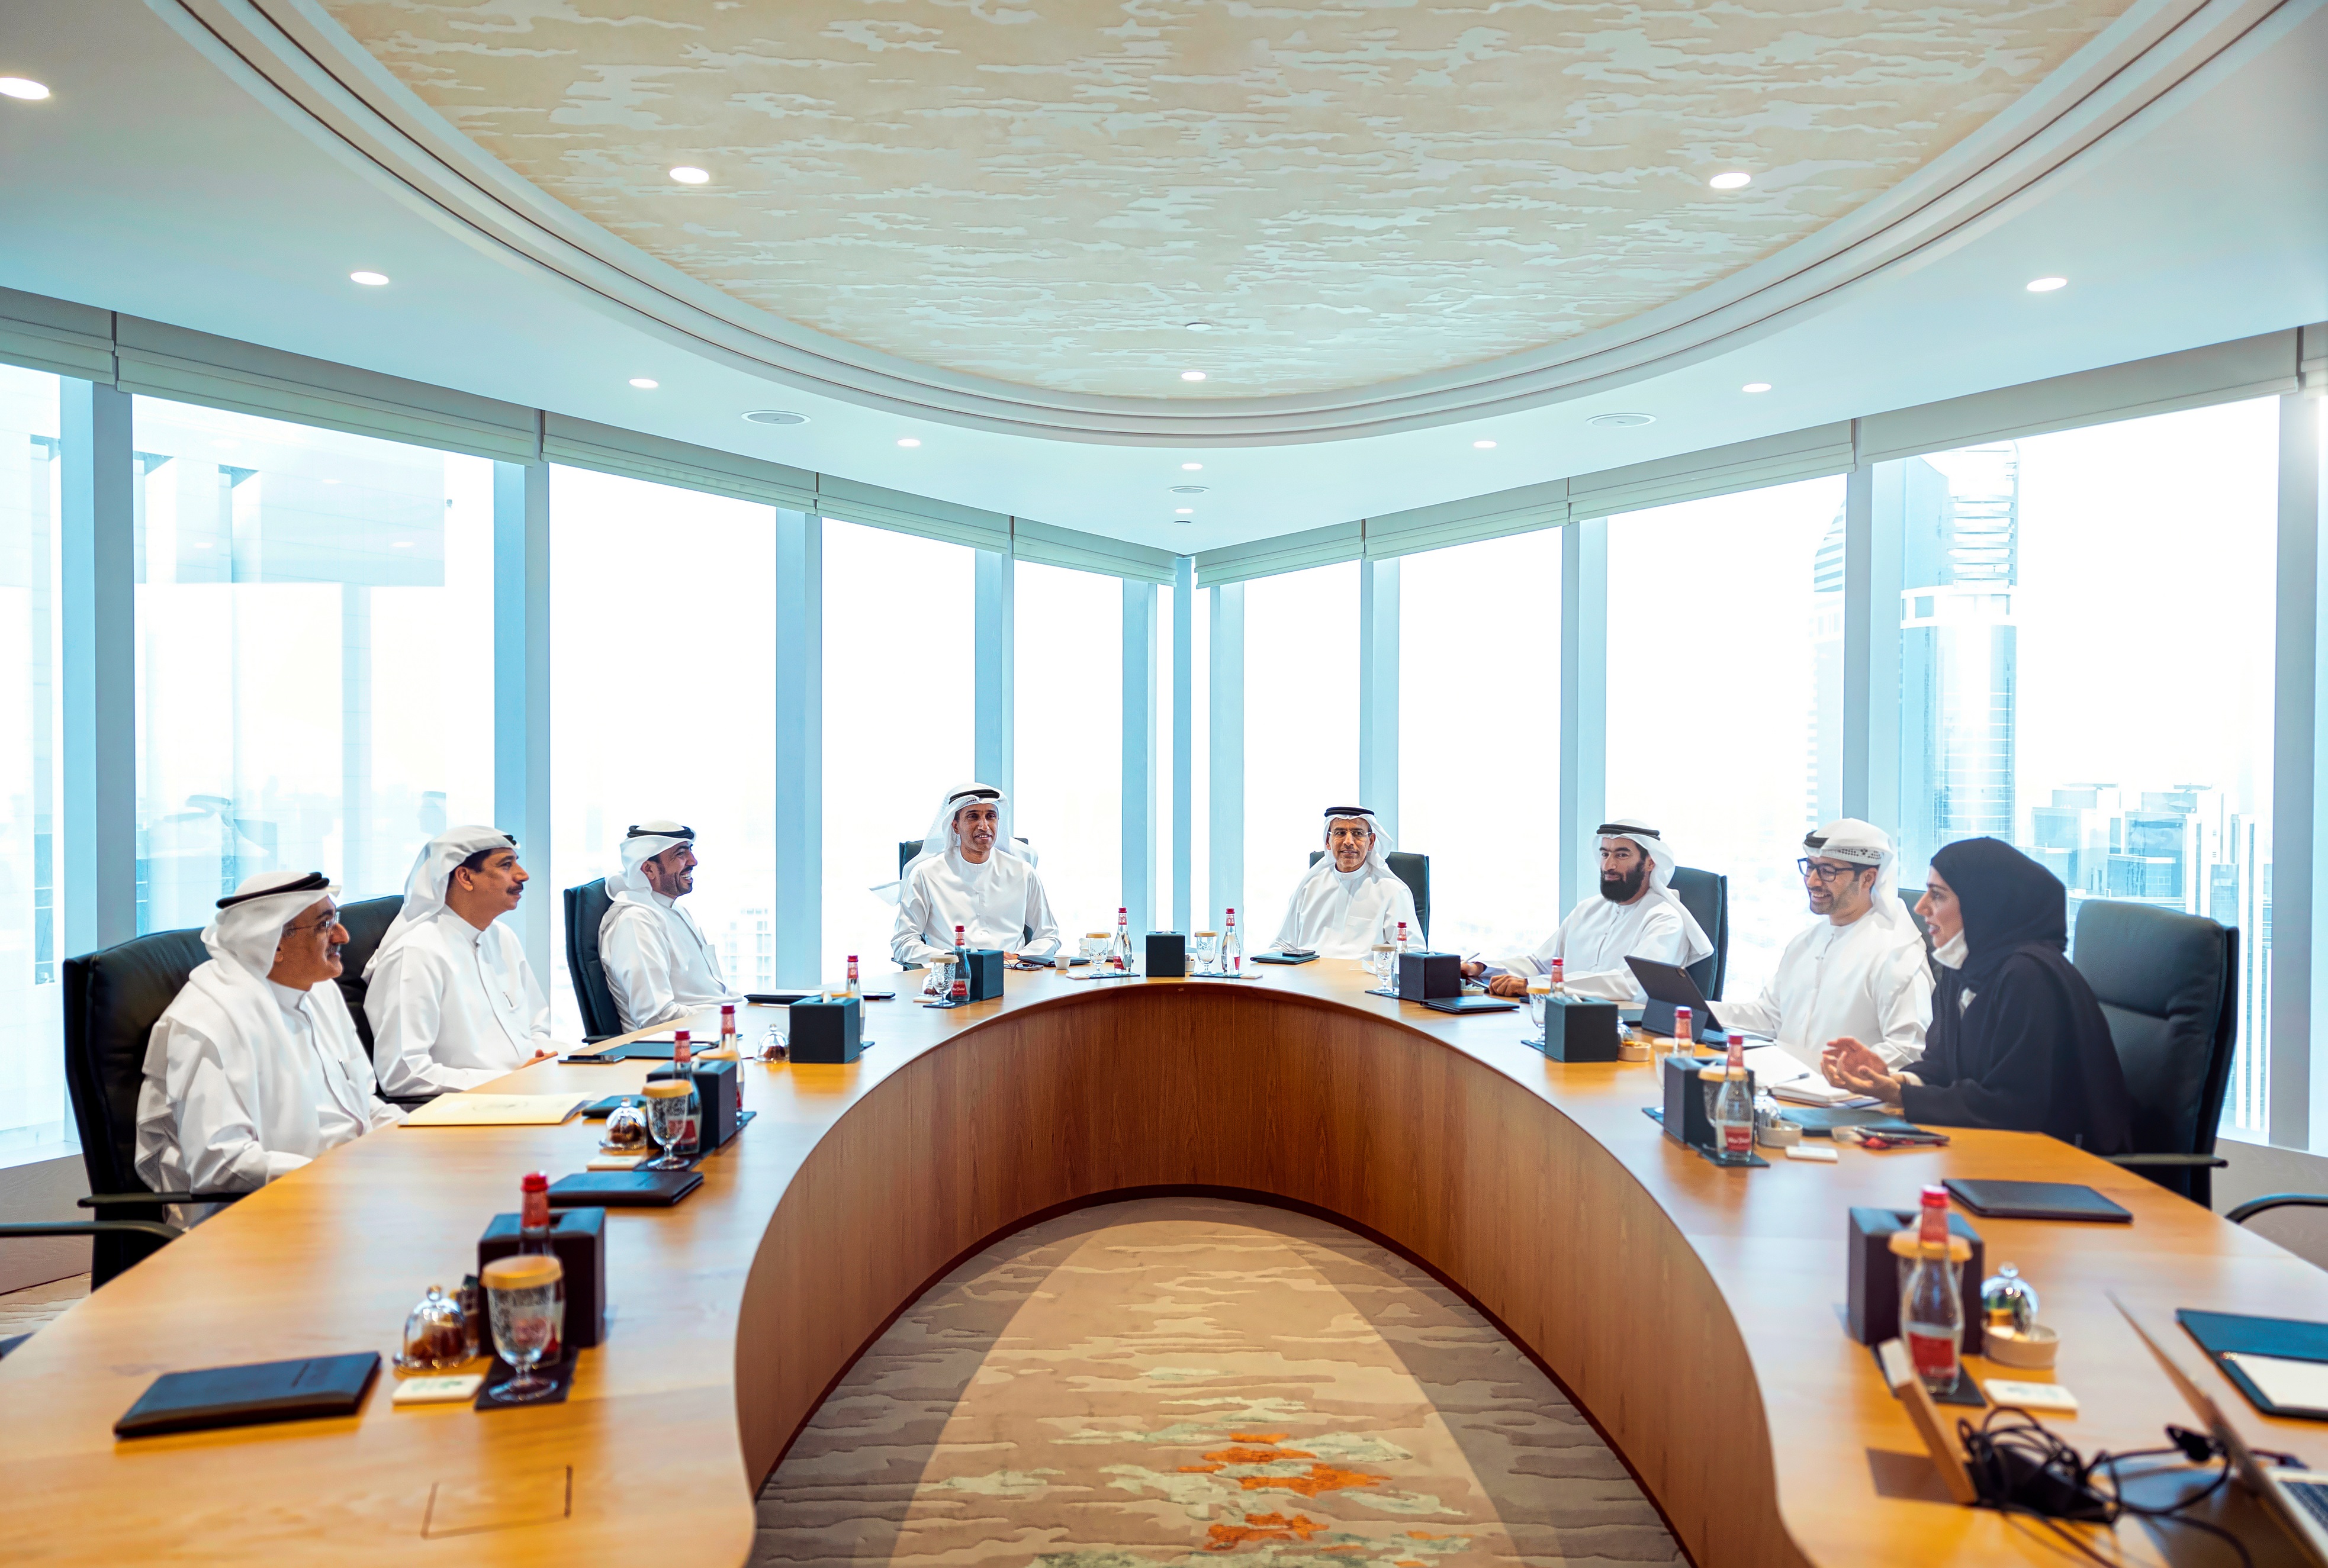 اللجنة التوجيهية لـ “خطة توفير حكومة دبي” تعلن عن آلية التسجيل والتنفيذ